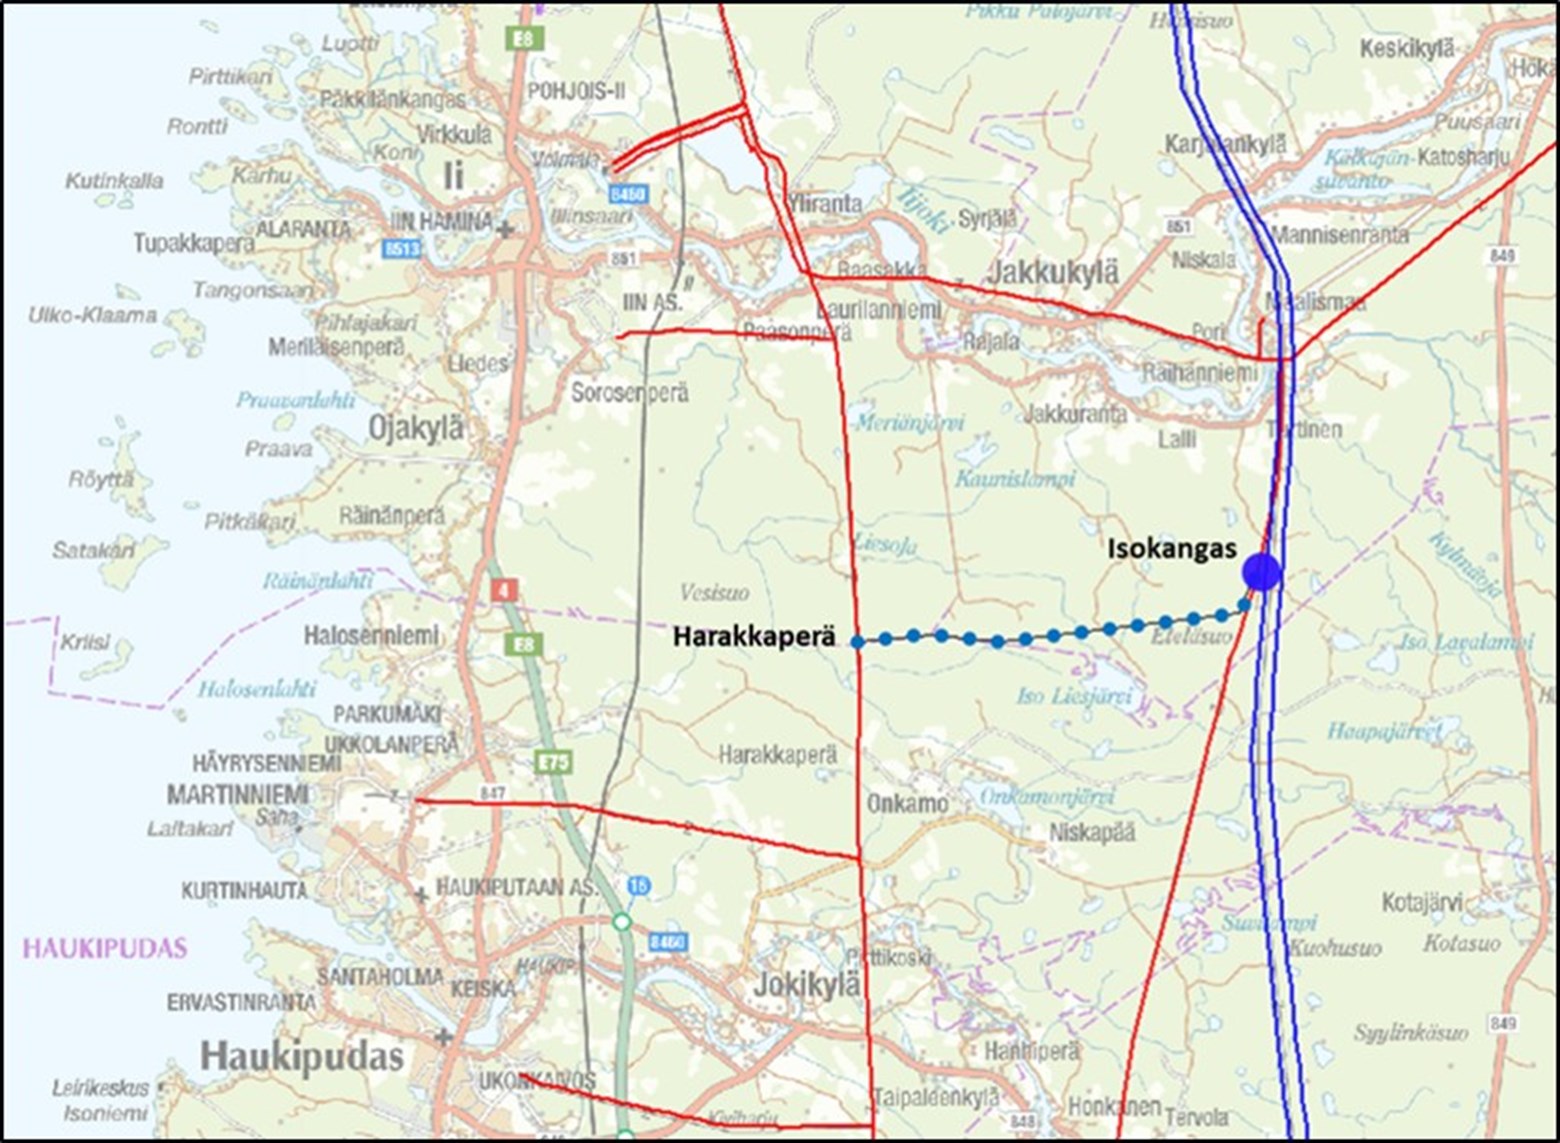 Harakkaperä - Isokangas 2x110 kV ympäristöselvitys